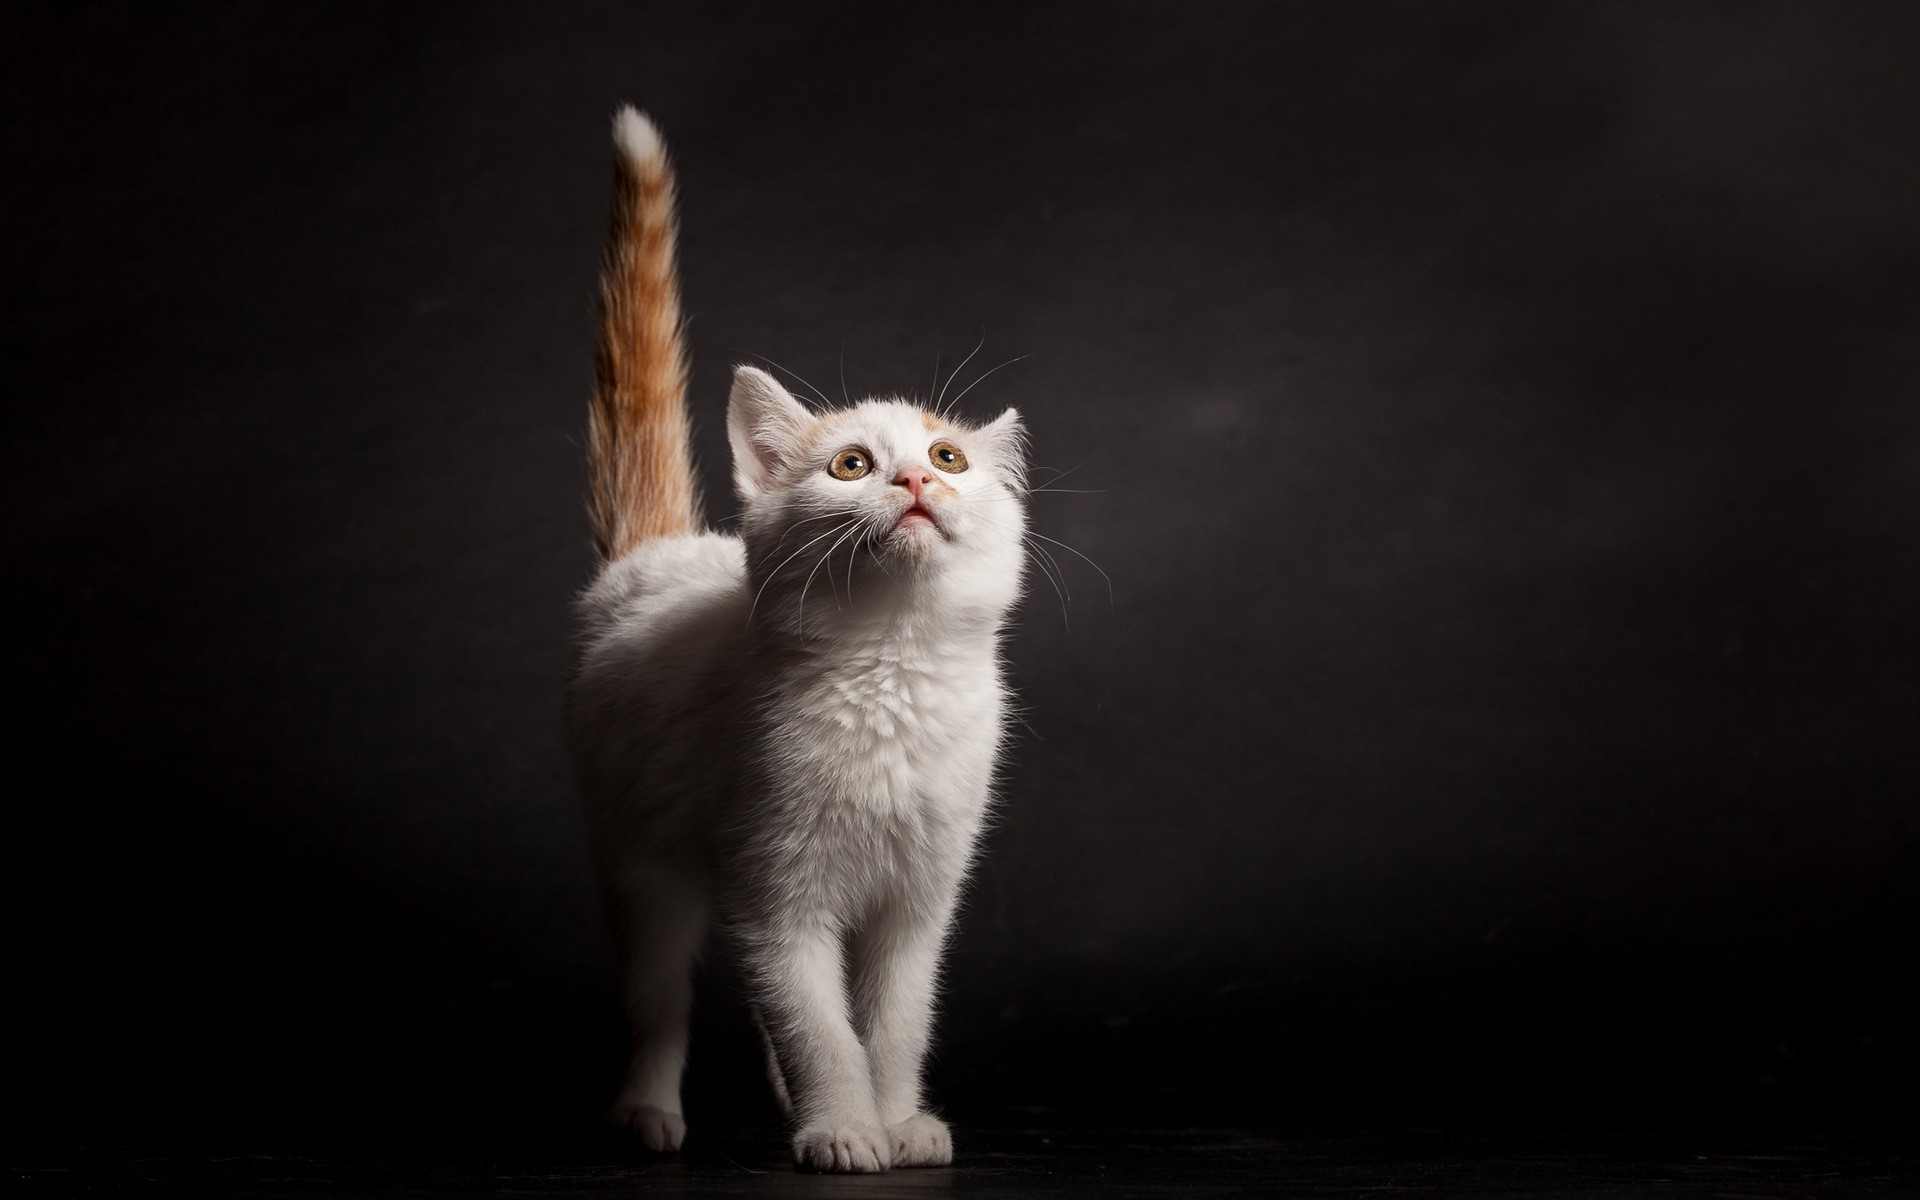 recherche de papier peint,chat,chats de petite à moyenne taille,félidés,moustaches,angora turc